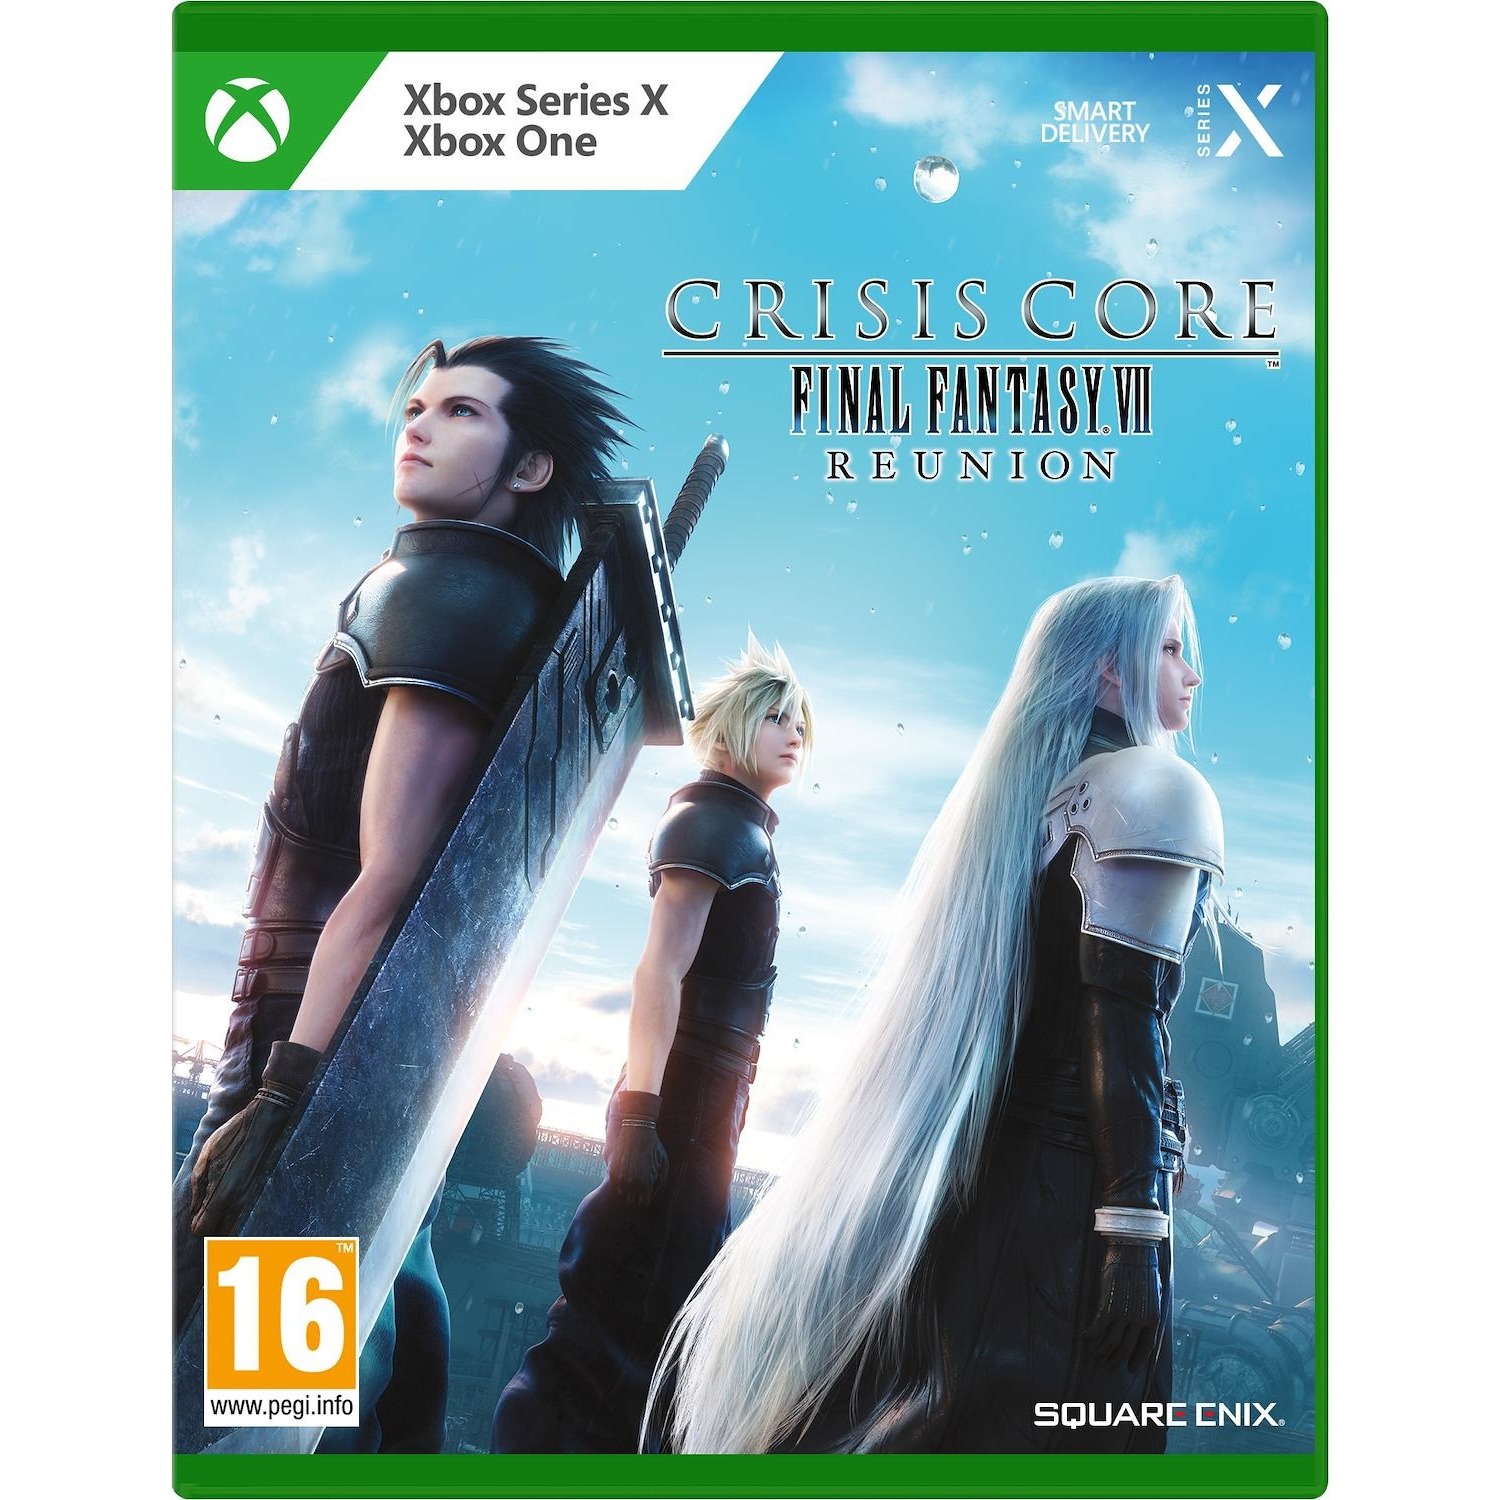 Immagine per Gioco XBOX Series X Crisis Core Final Fantasy VII Reunion da DIMOStore